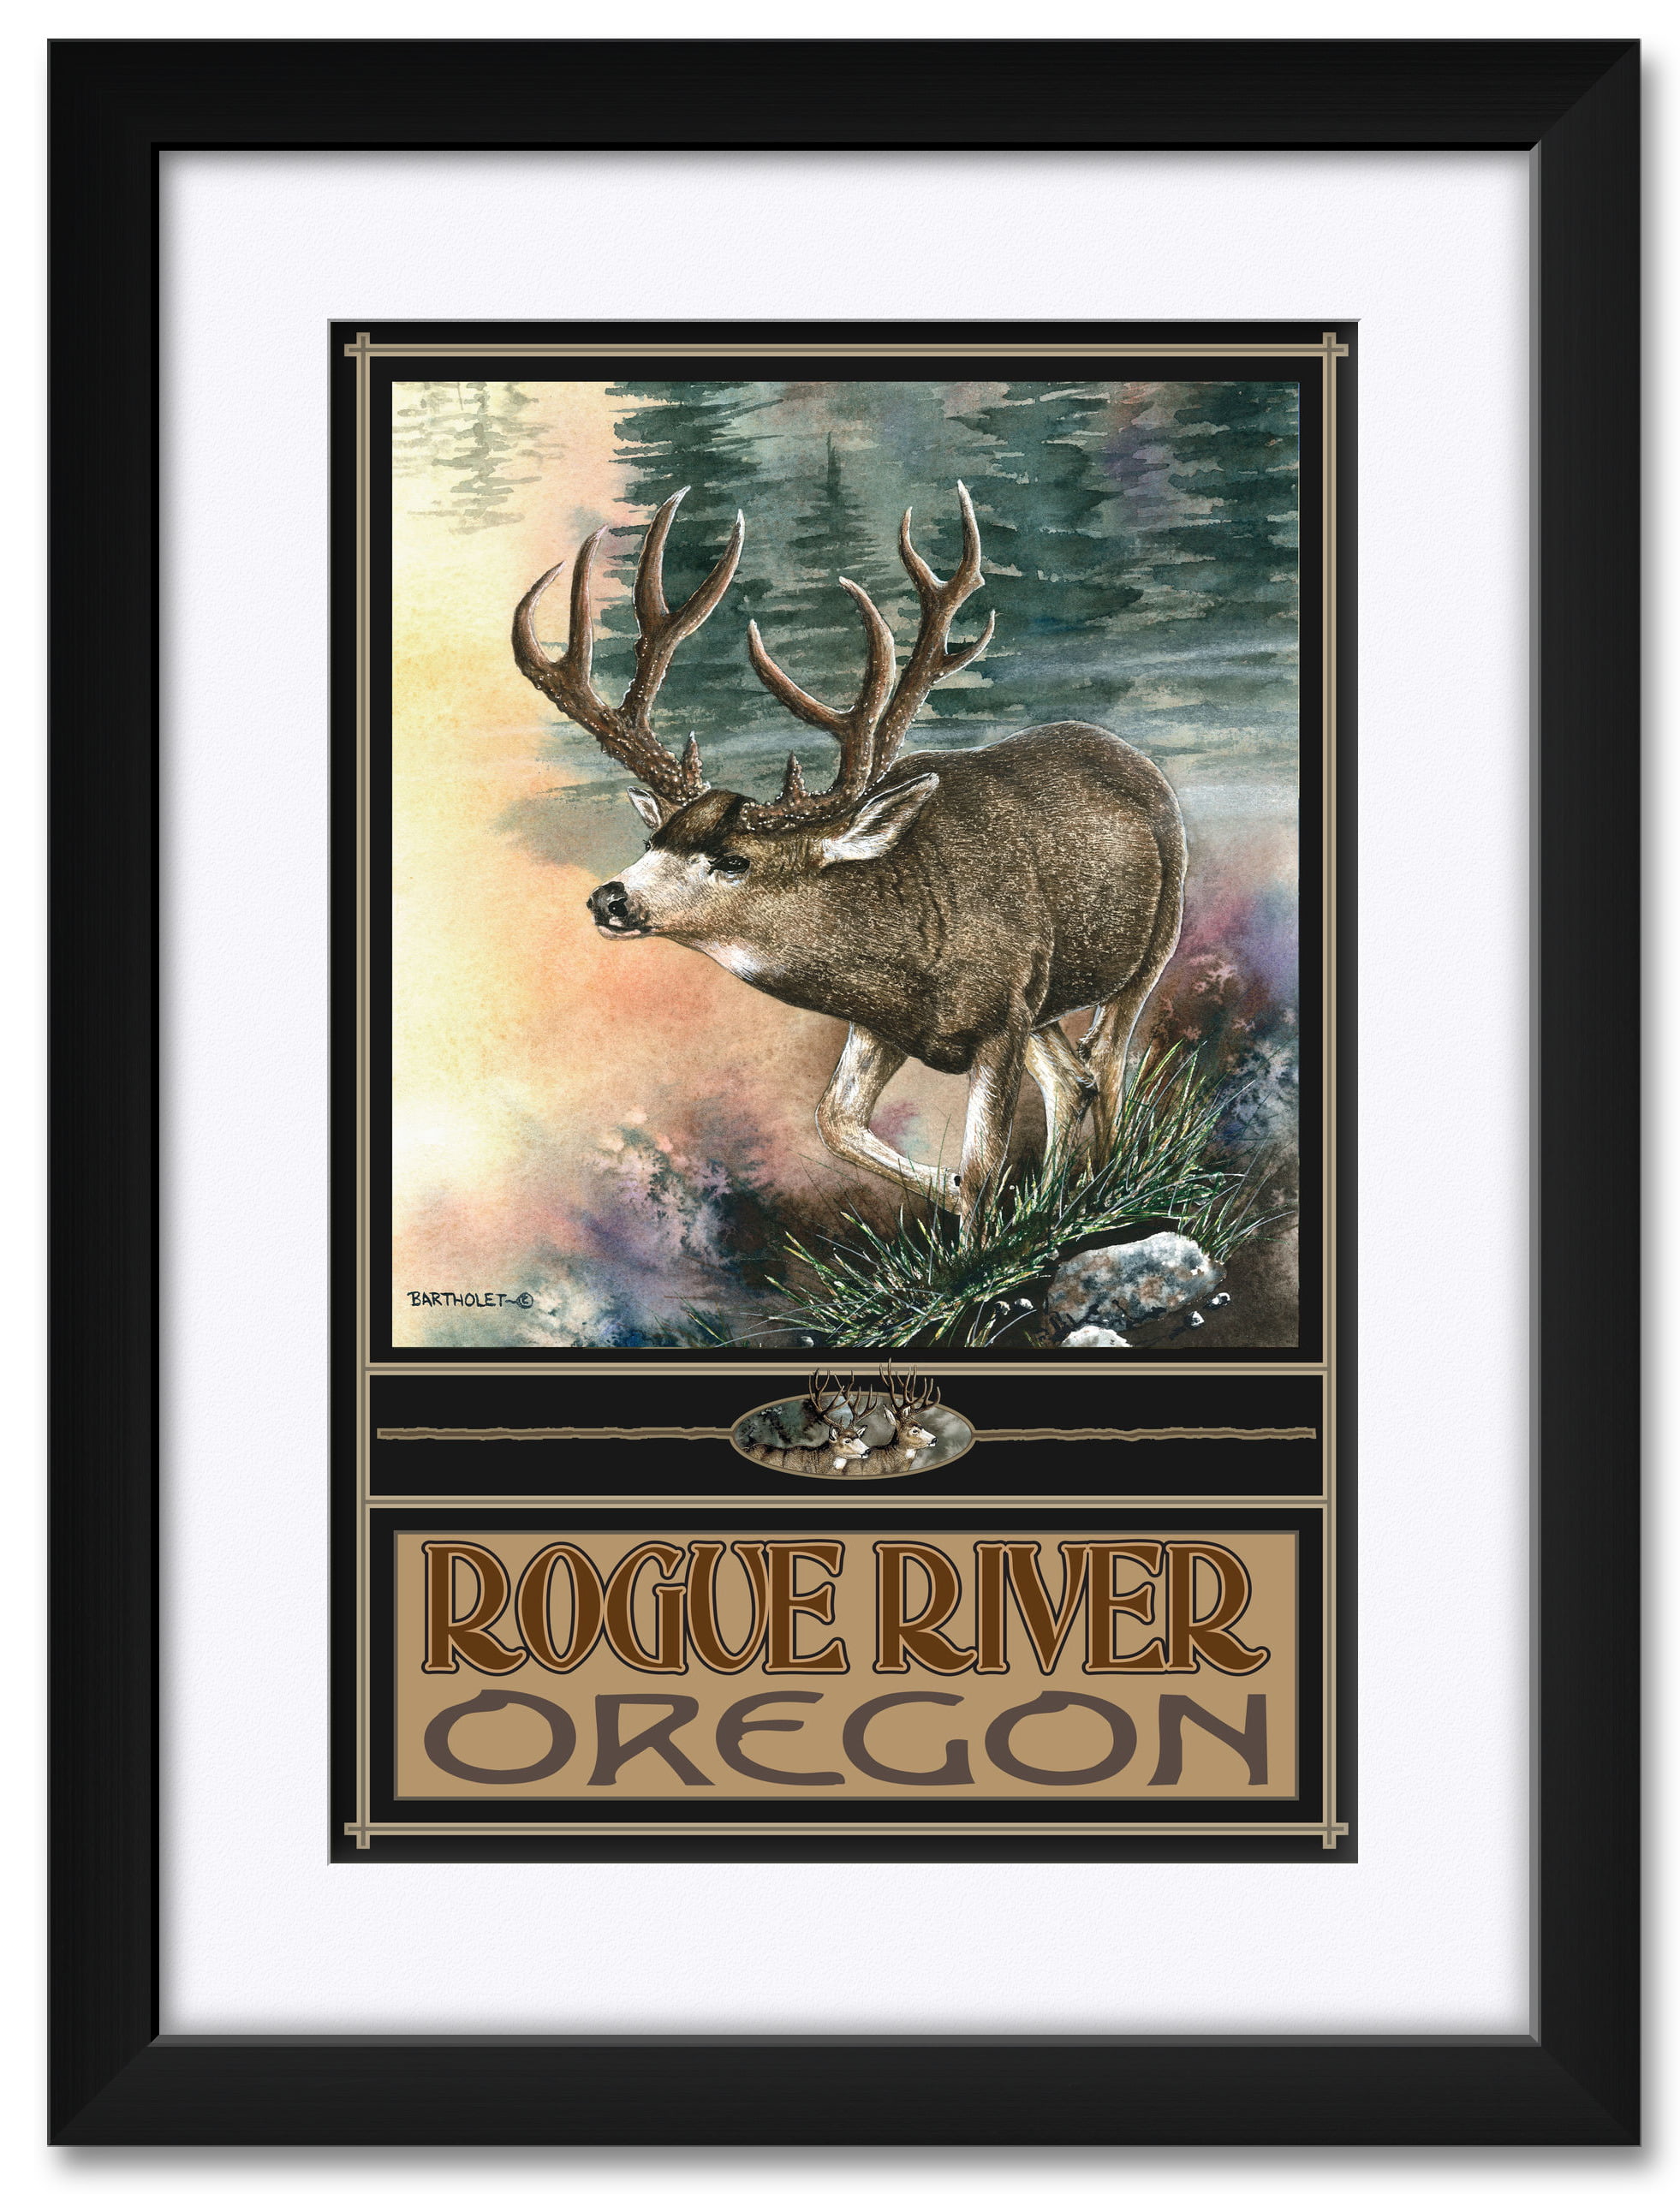 Rogue River Oregon Elk Framed & Matted Art Print by Dave Bartholet. Print Size 12" x 18" Framed